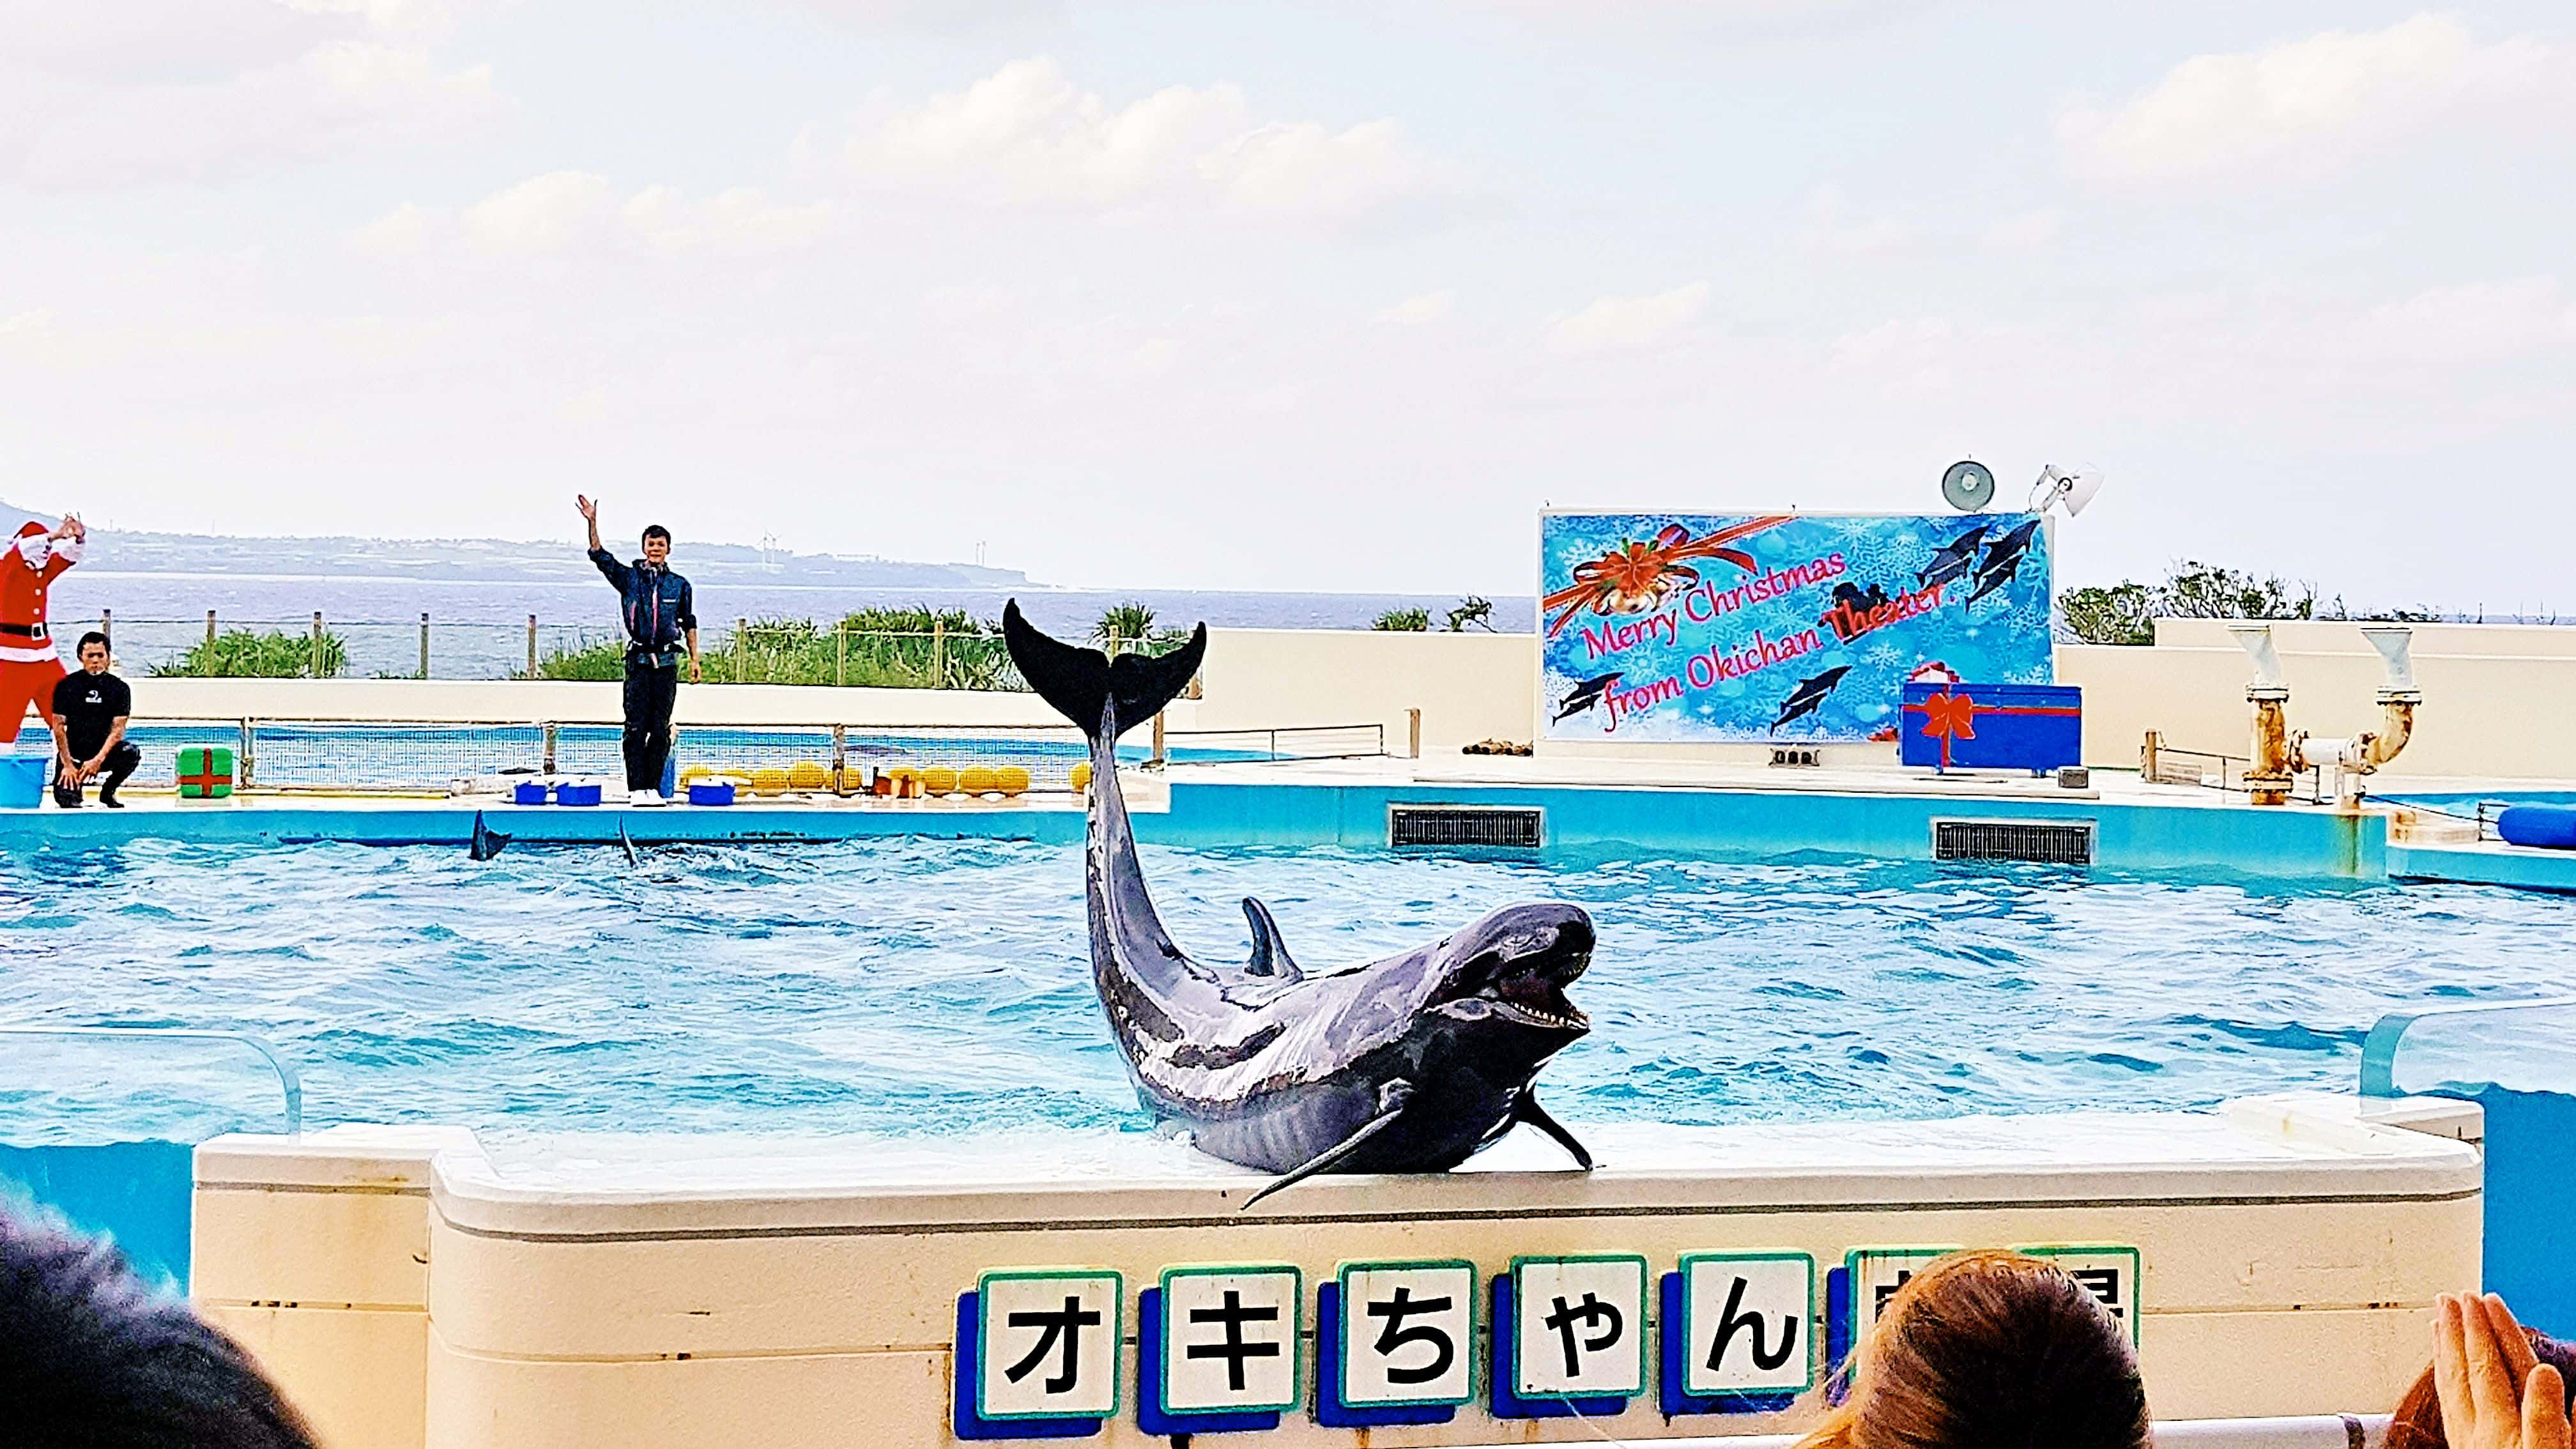 พิพิธภัณฑ์สัตว์น้ำชูราอุมิ (Okinawa Churaumi Aquarium)